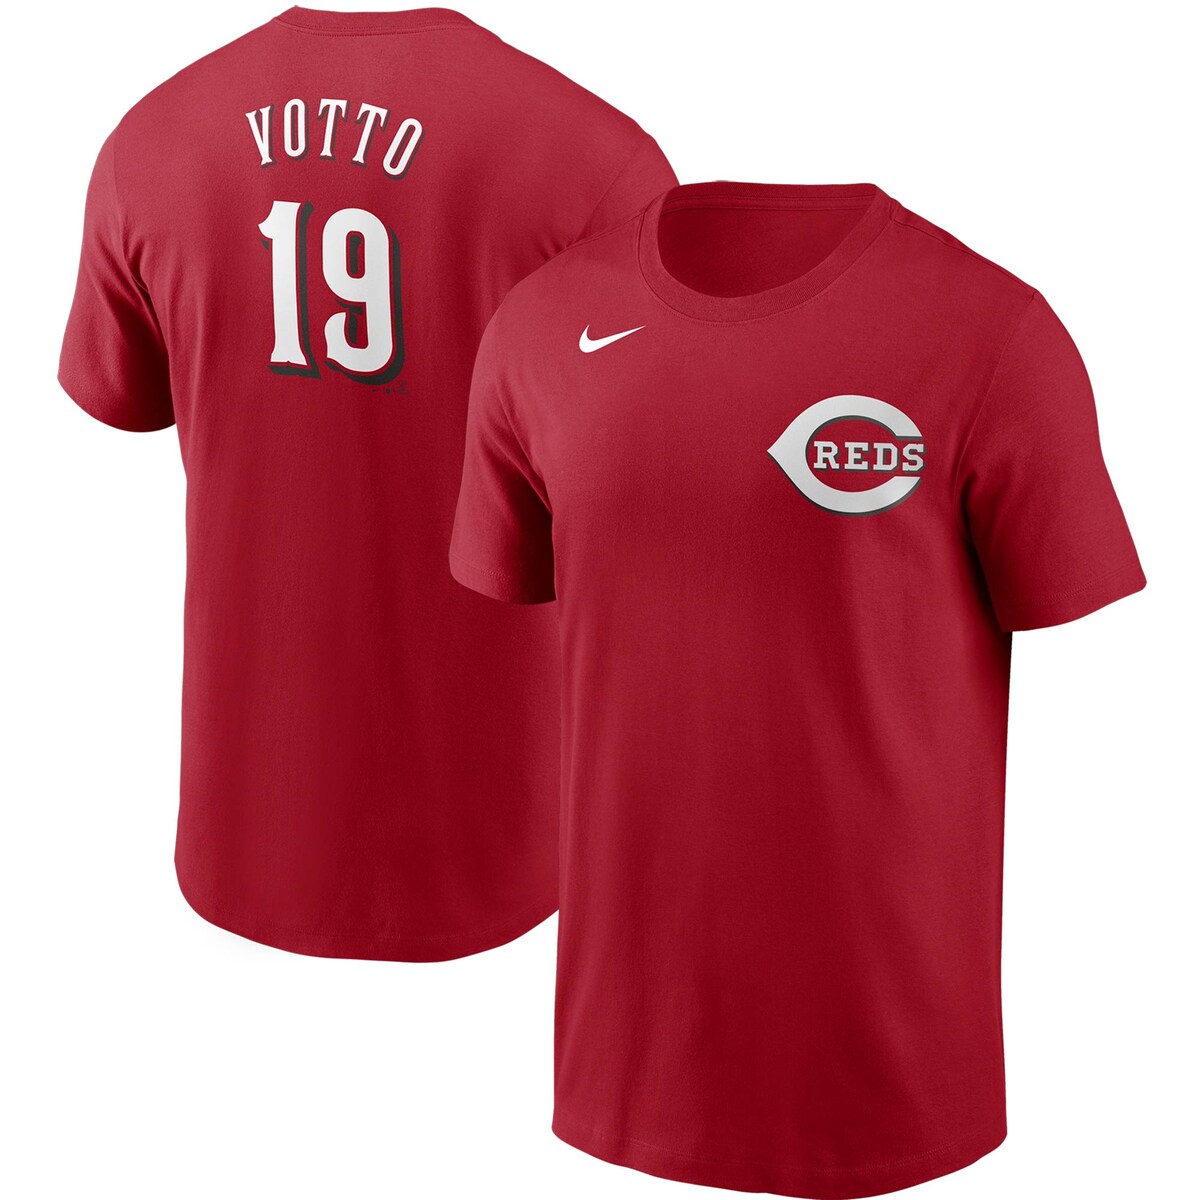 【公式グッズ】MLB レッズ ジョーイ・ボット Tシャツ Nike ナイキ メンズ レッド (Men's MLB Nike Name & Number T-Shirt)